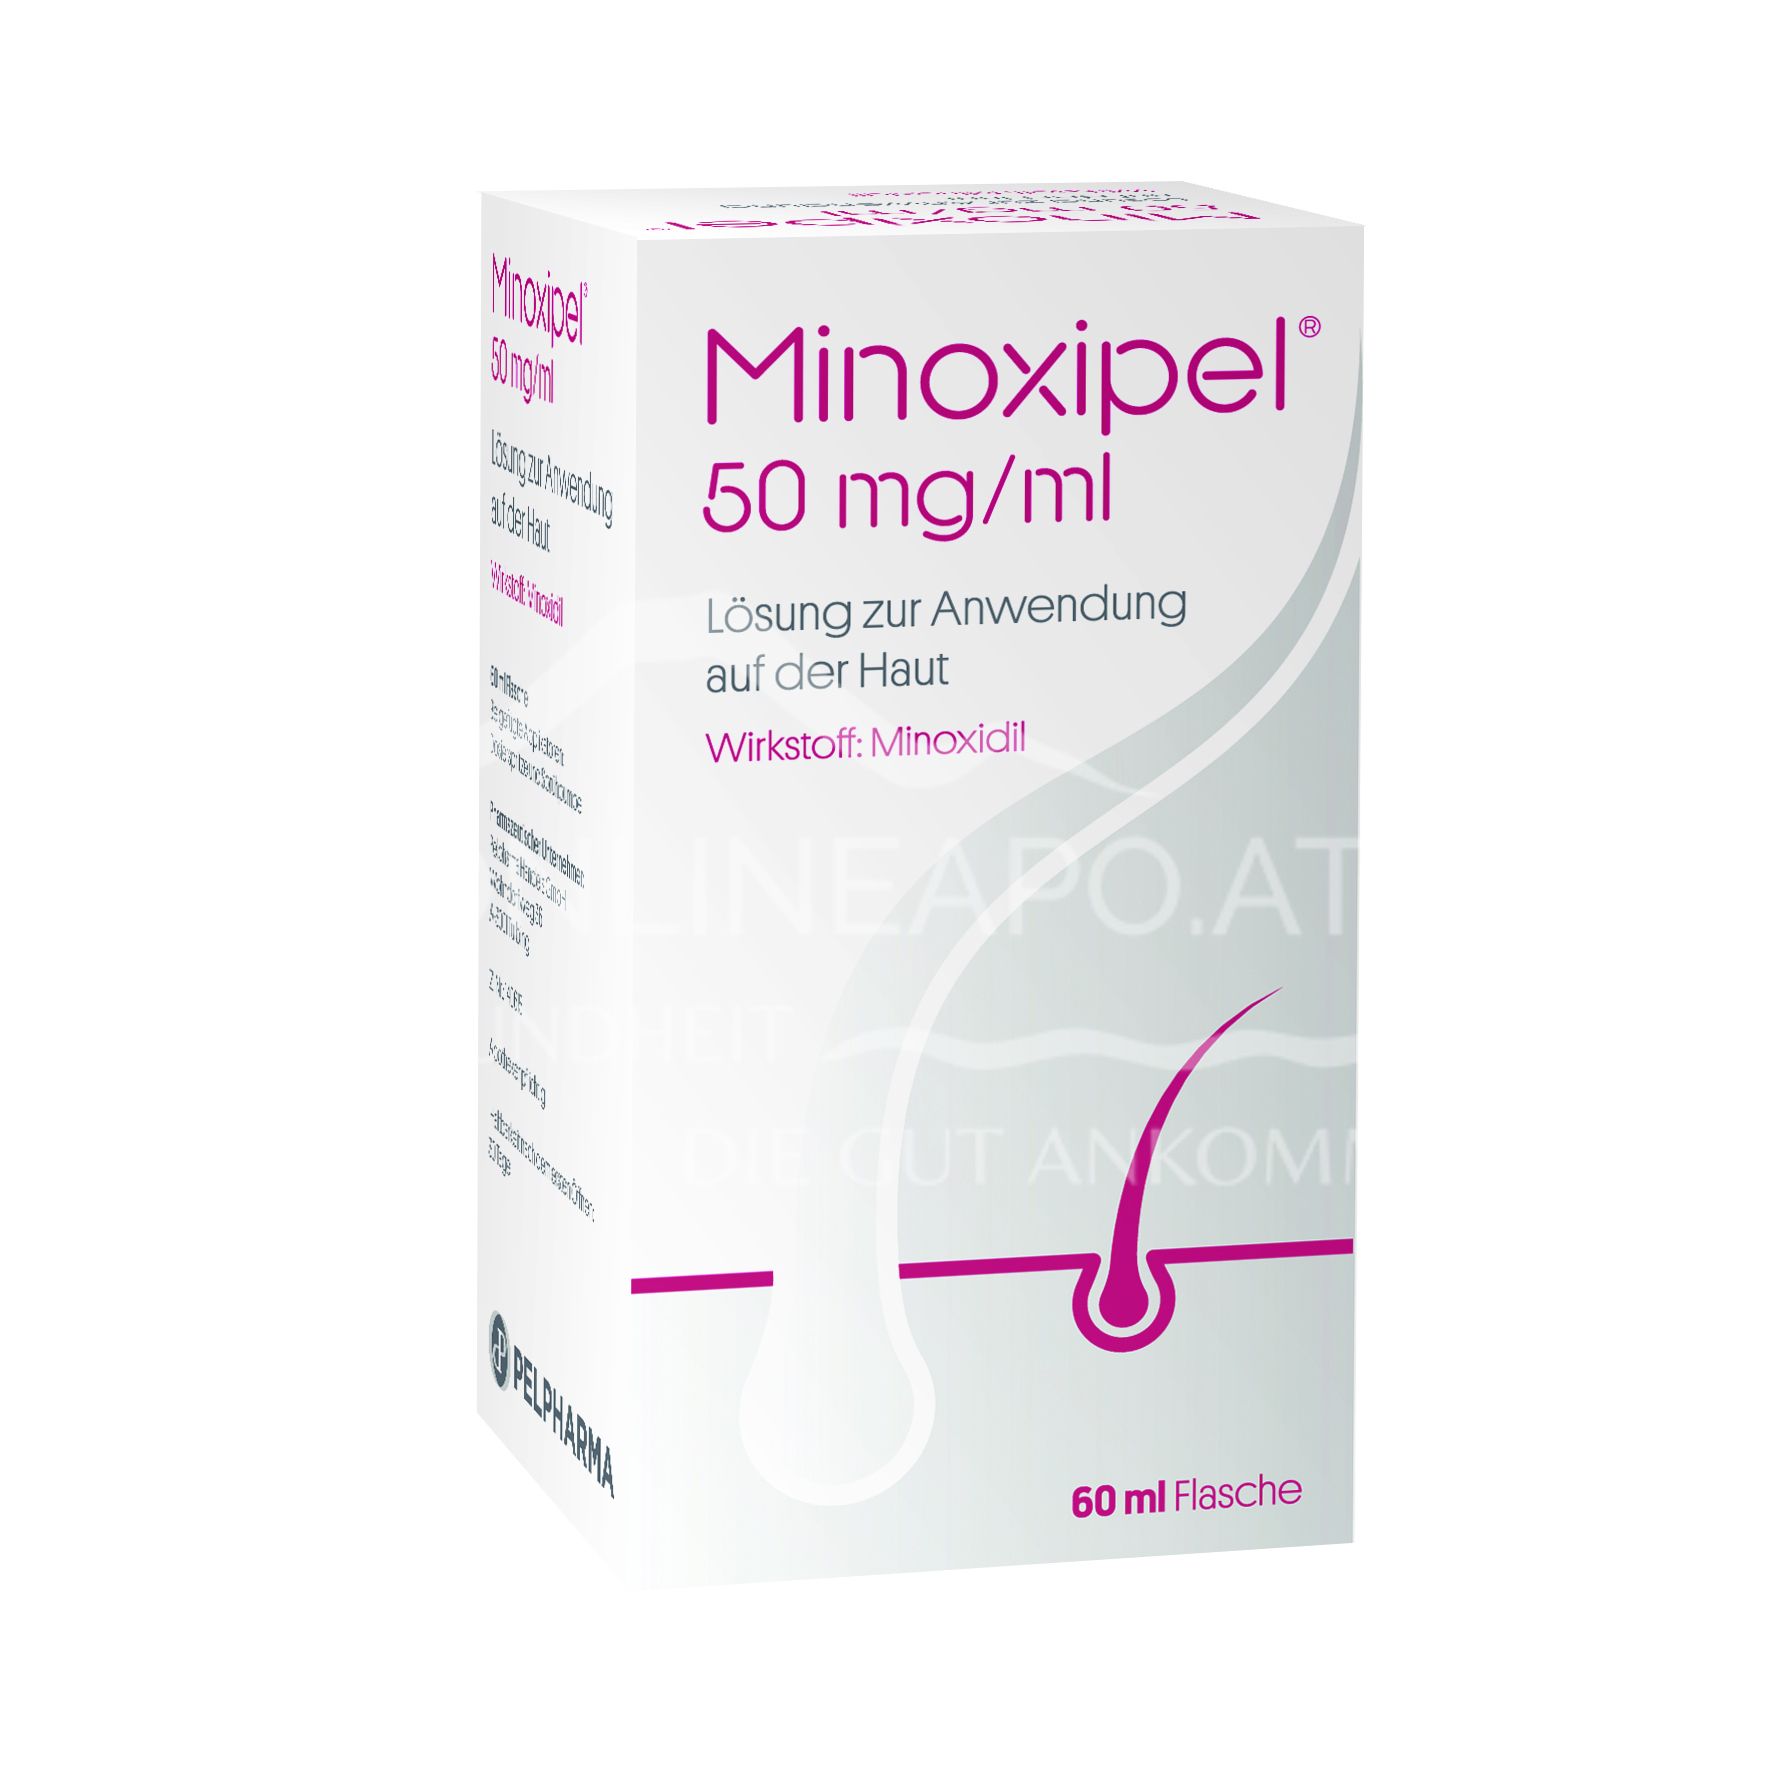 Minoxipel 50 mg/ml Lösung zur Anwendung auf der Haut